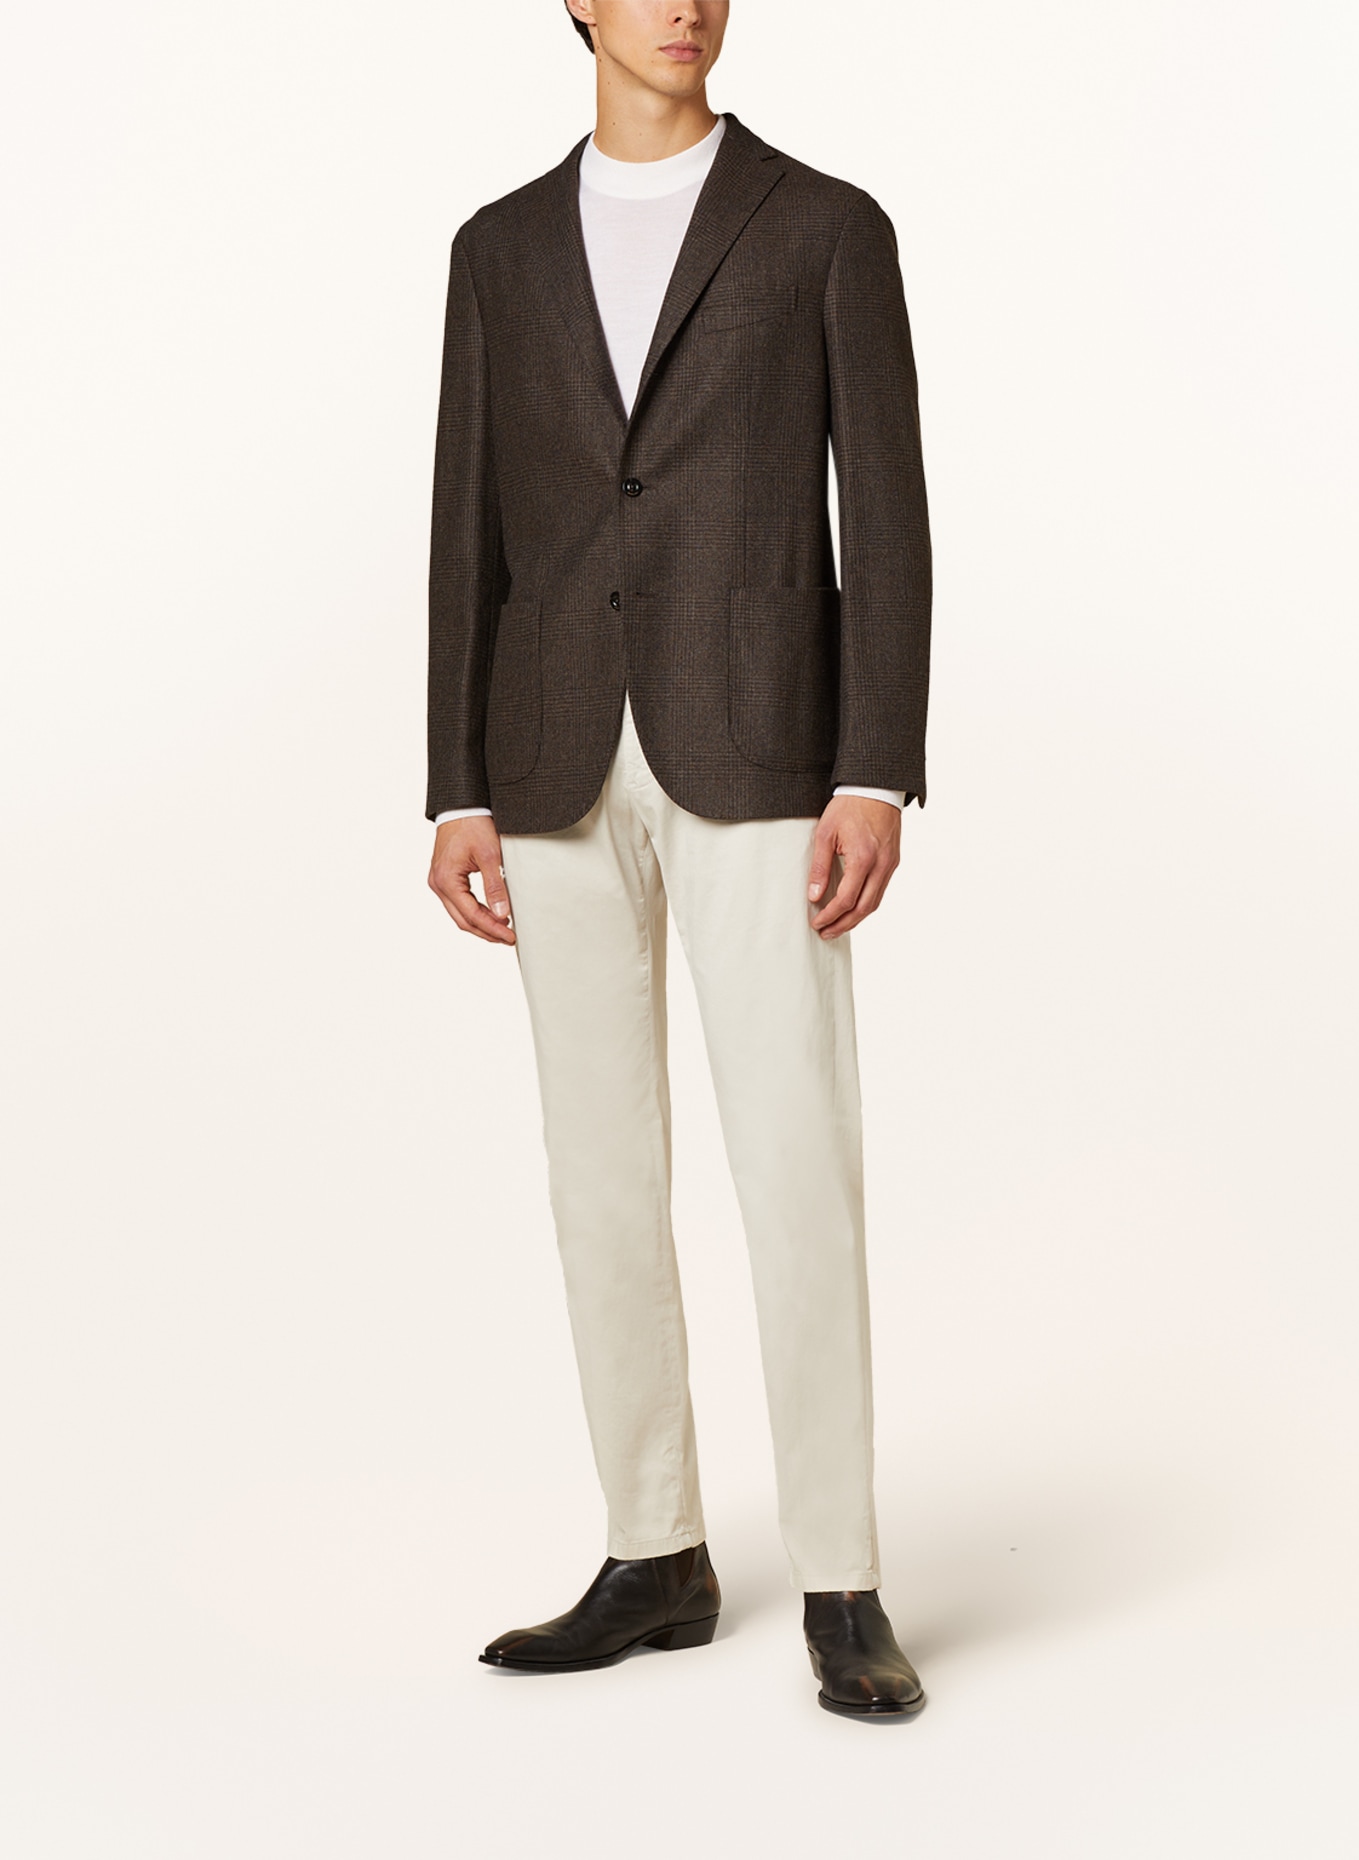 BOGLIOLI Tailored jacket regular fit, Color: DARK BROWN (Image 2)